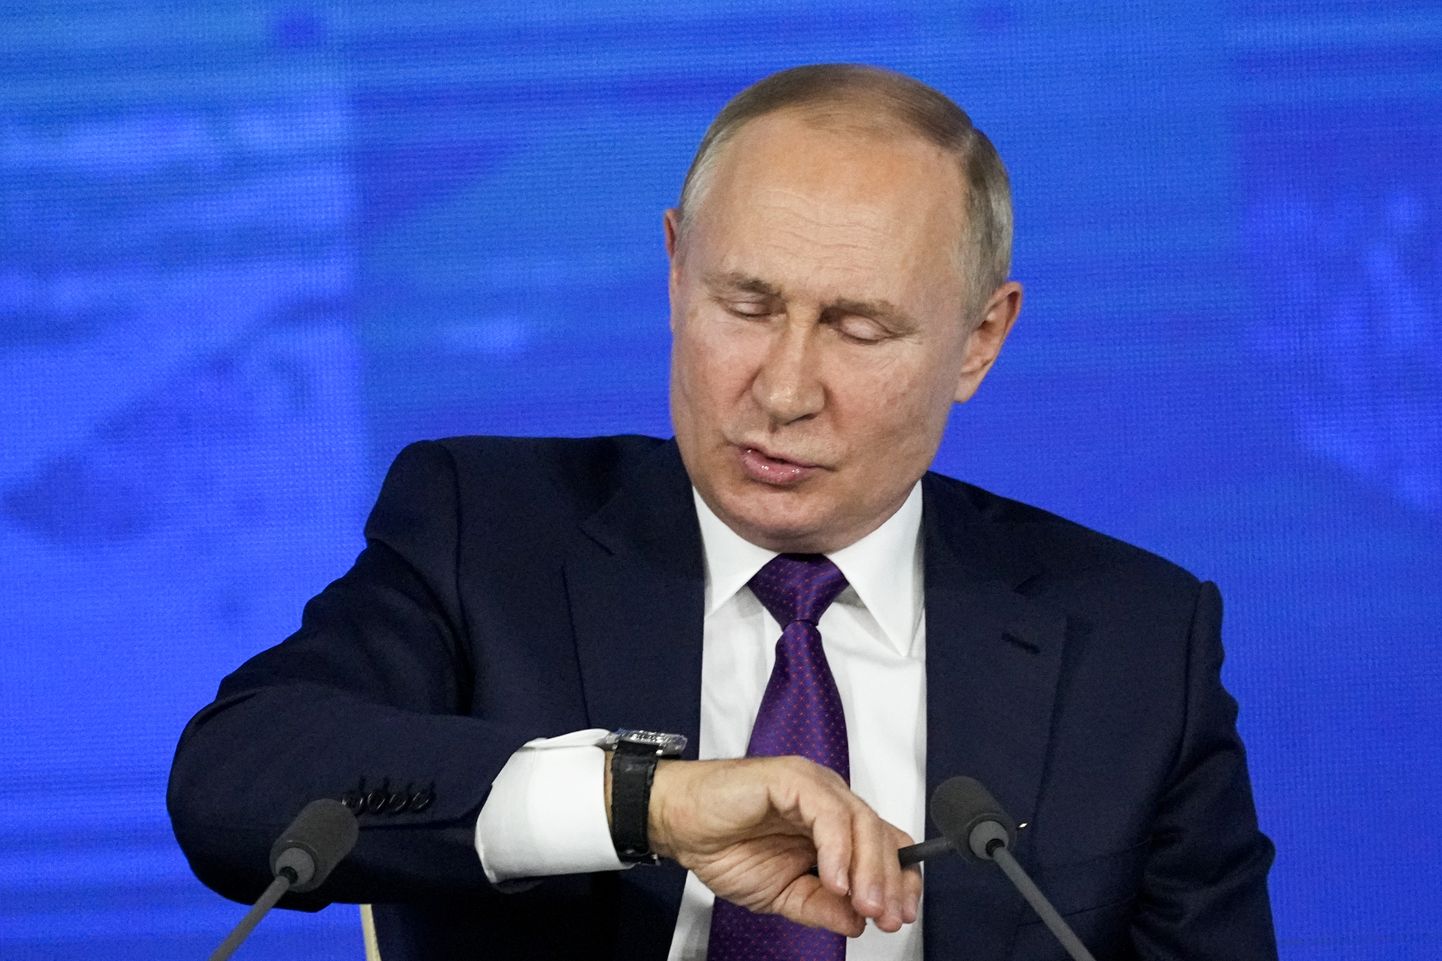 Путин смотрит на часы, будучи уверенным, что он нужен России как минимум до 2030 года.